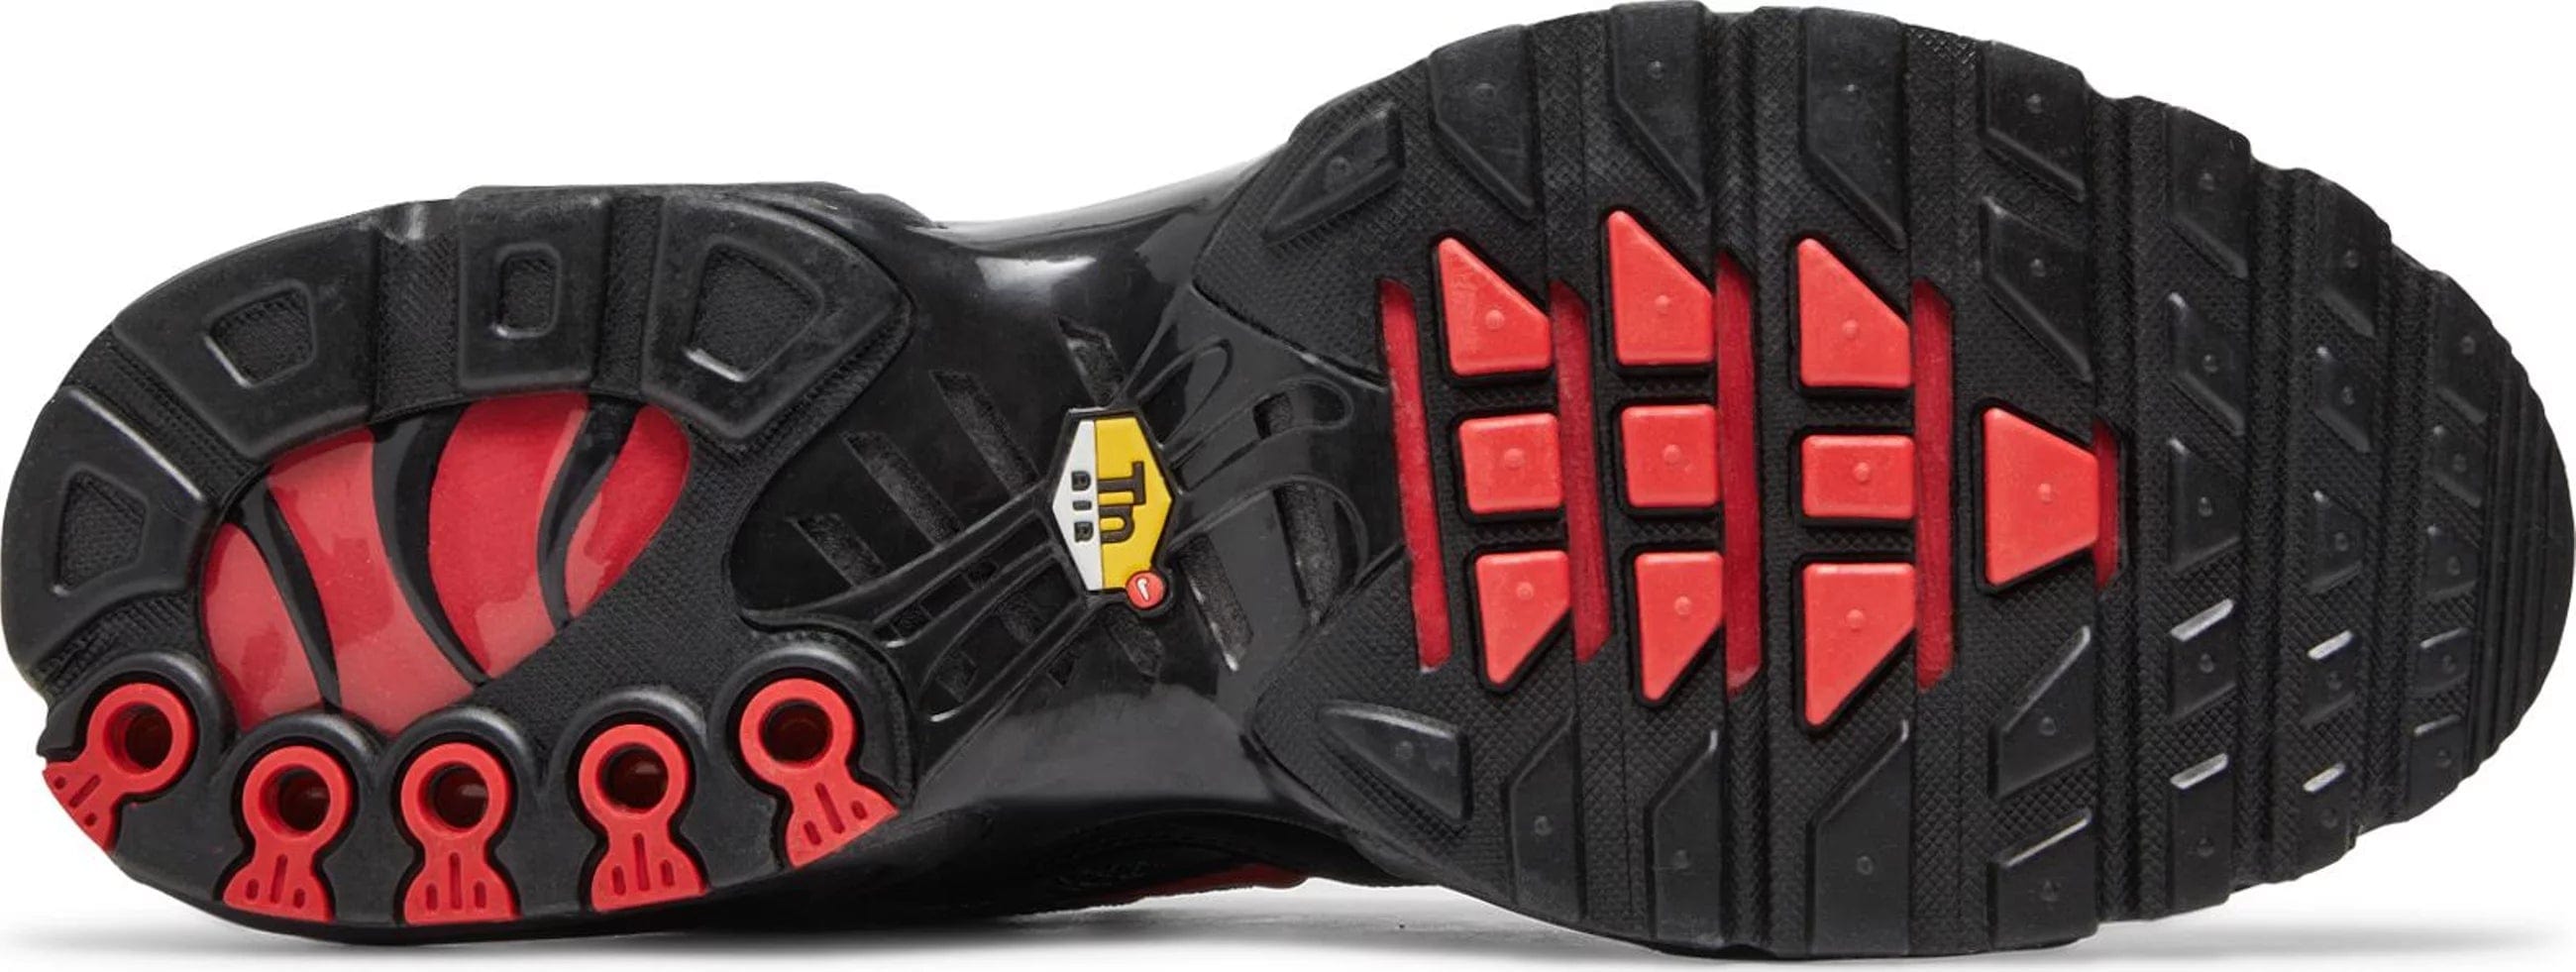 sneakers Nike Air Max Plus TN Metal Mesh Black Red Men's